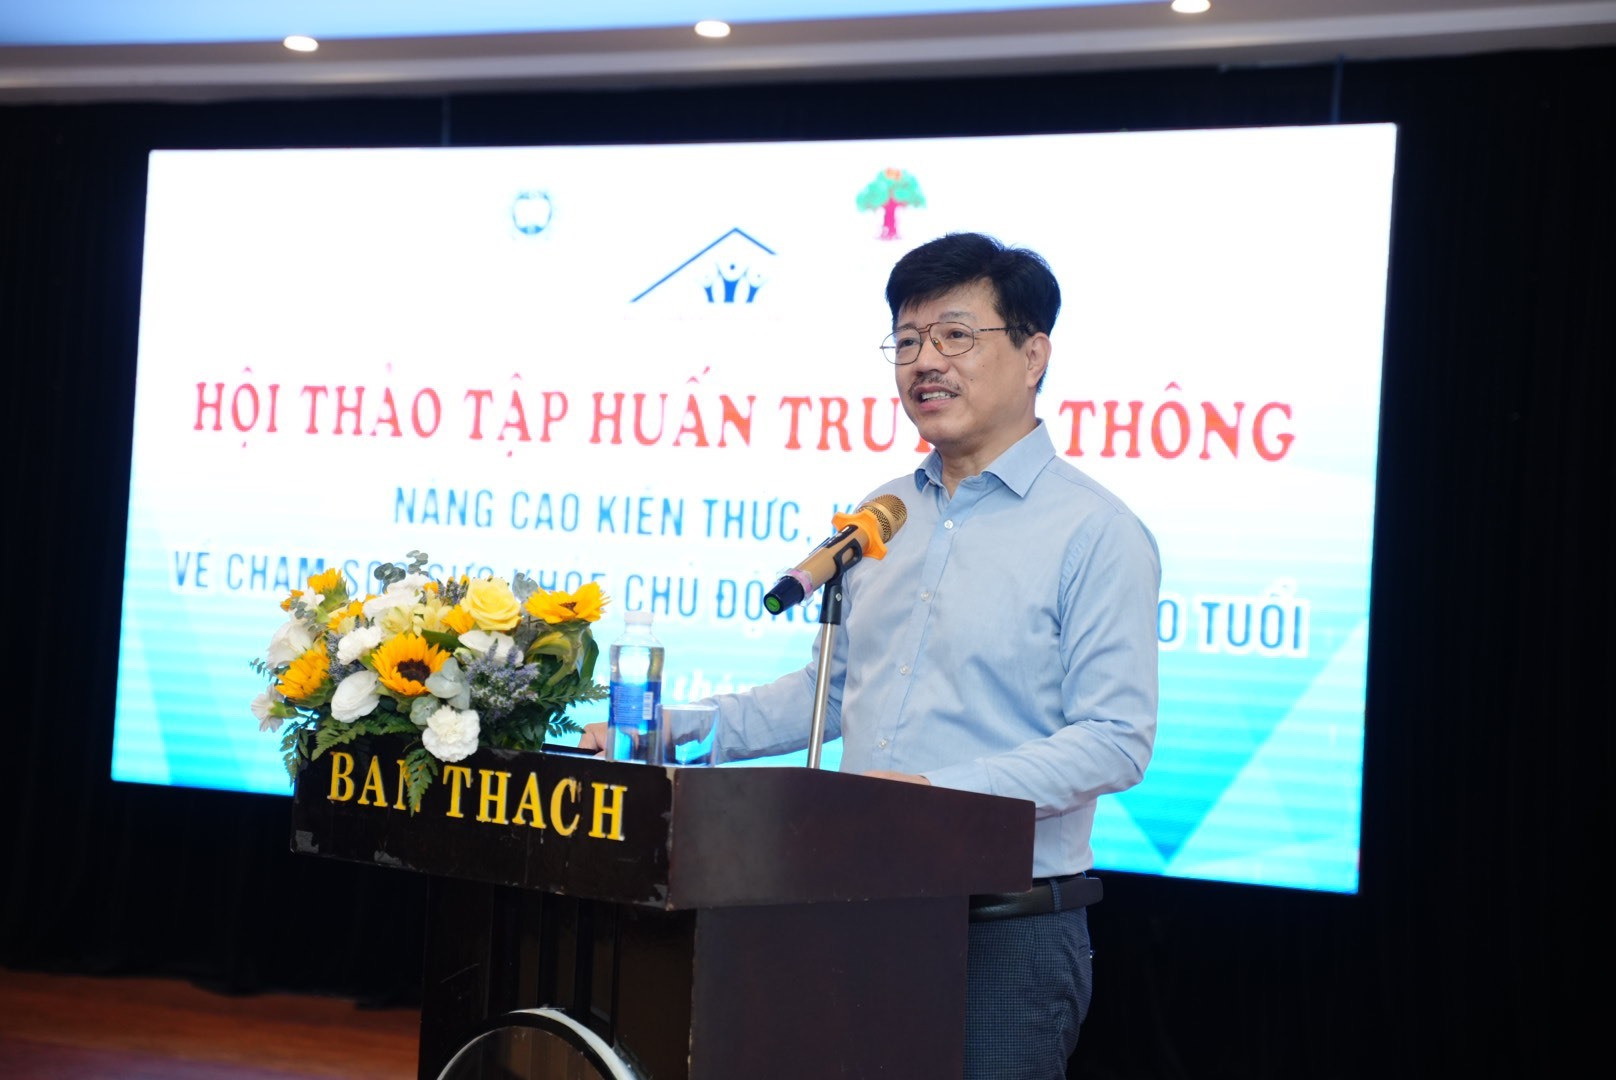 Ông Vũ Mạnh Cường - Giám đốc Trung tâm Truyền thông - Giáo dục Sức khỏe Trung ương (Bộ Y tế) báo cáo về thực trạng NCT tại Việt Nam. Ảnh: X.H